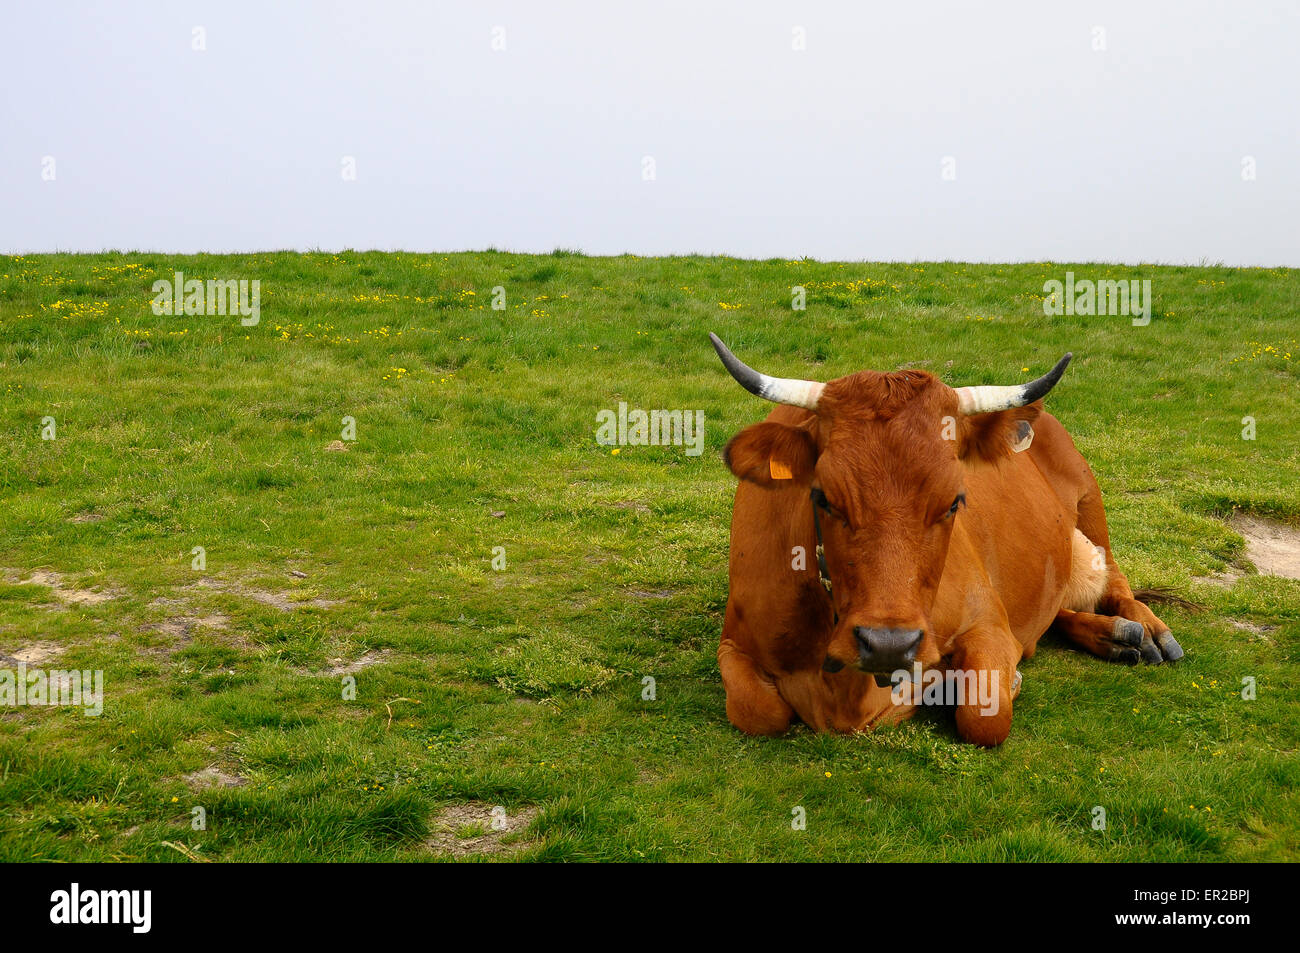 Tarine vache dans la montagne du Semnoz, près d'Annecy, Savoie, France Banque D'Images